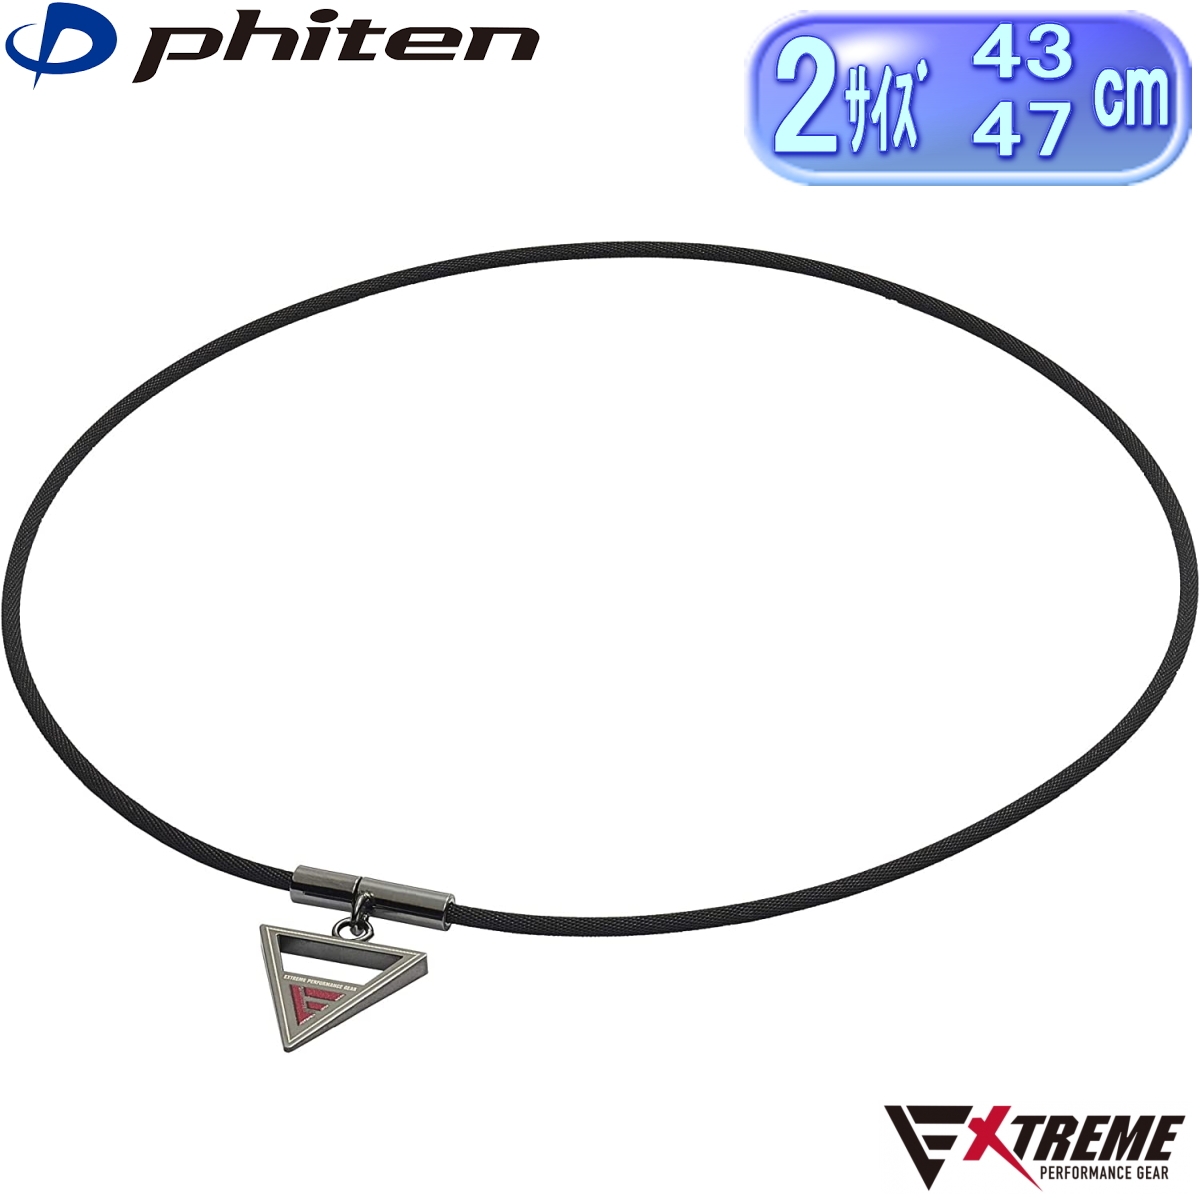 ファイテン(phiten) ネックレス RAKUWAネック EXTREME 全2サイズ(43cm 